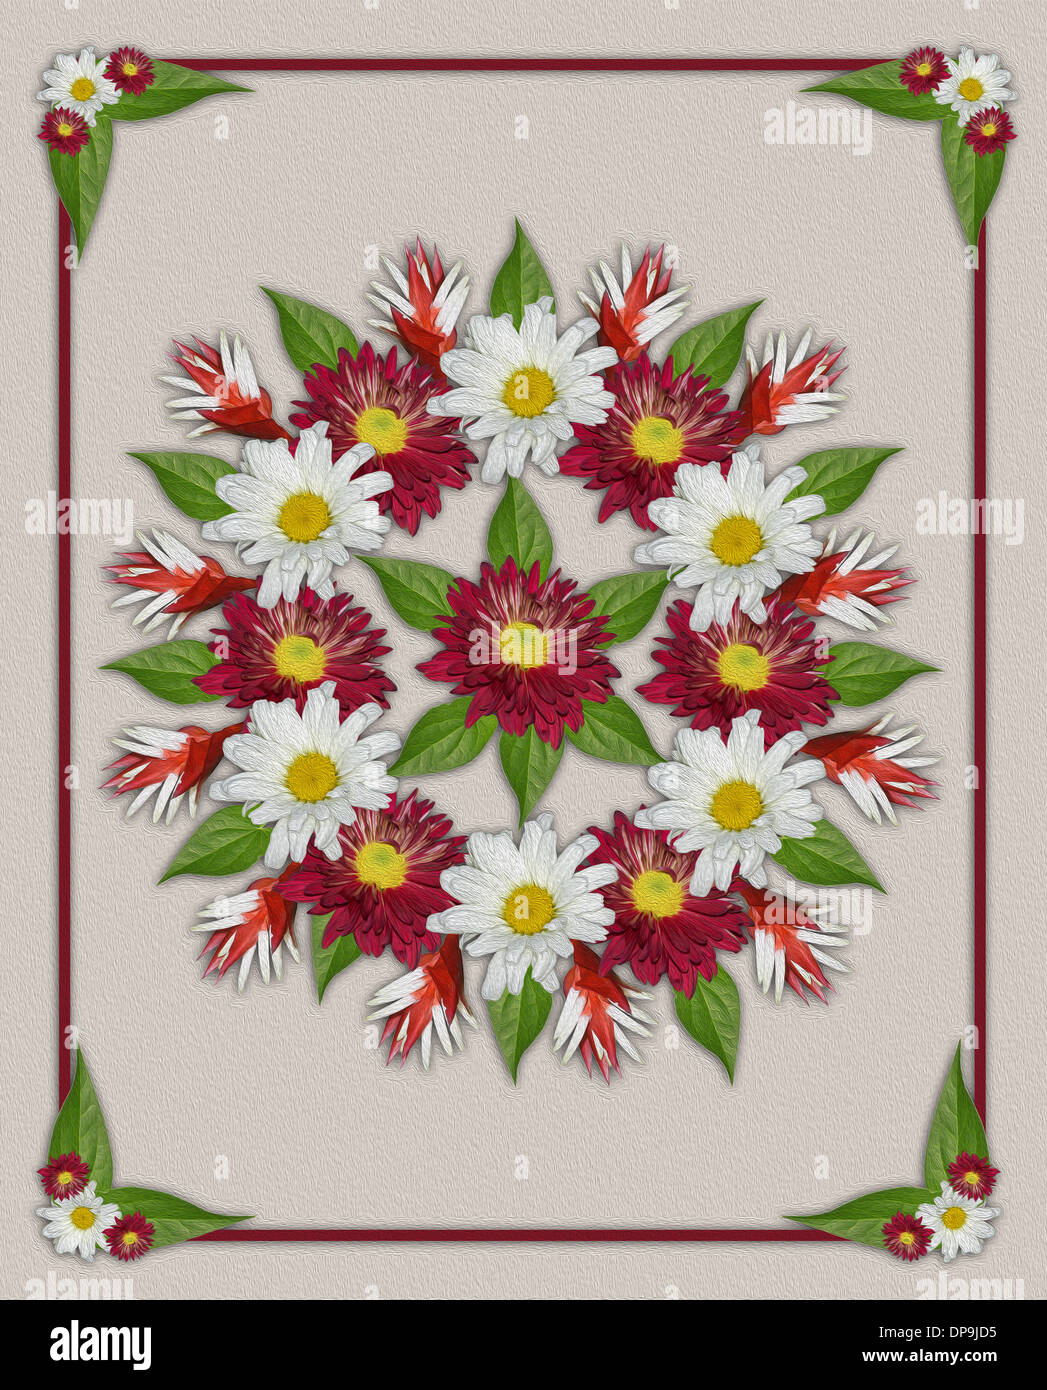 Spektakuläre Blumenkunst - geometrisches Design mit rote und weiße Chrysanthemen Blüten und Blätter auf Beige Hintergrund Stockfoto